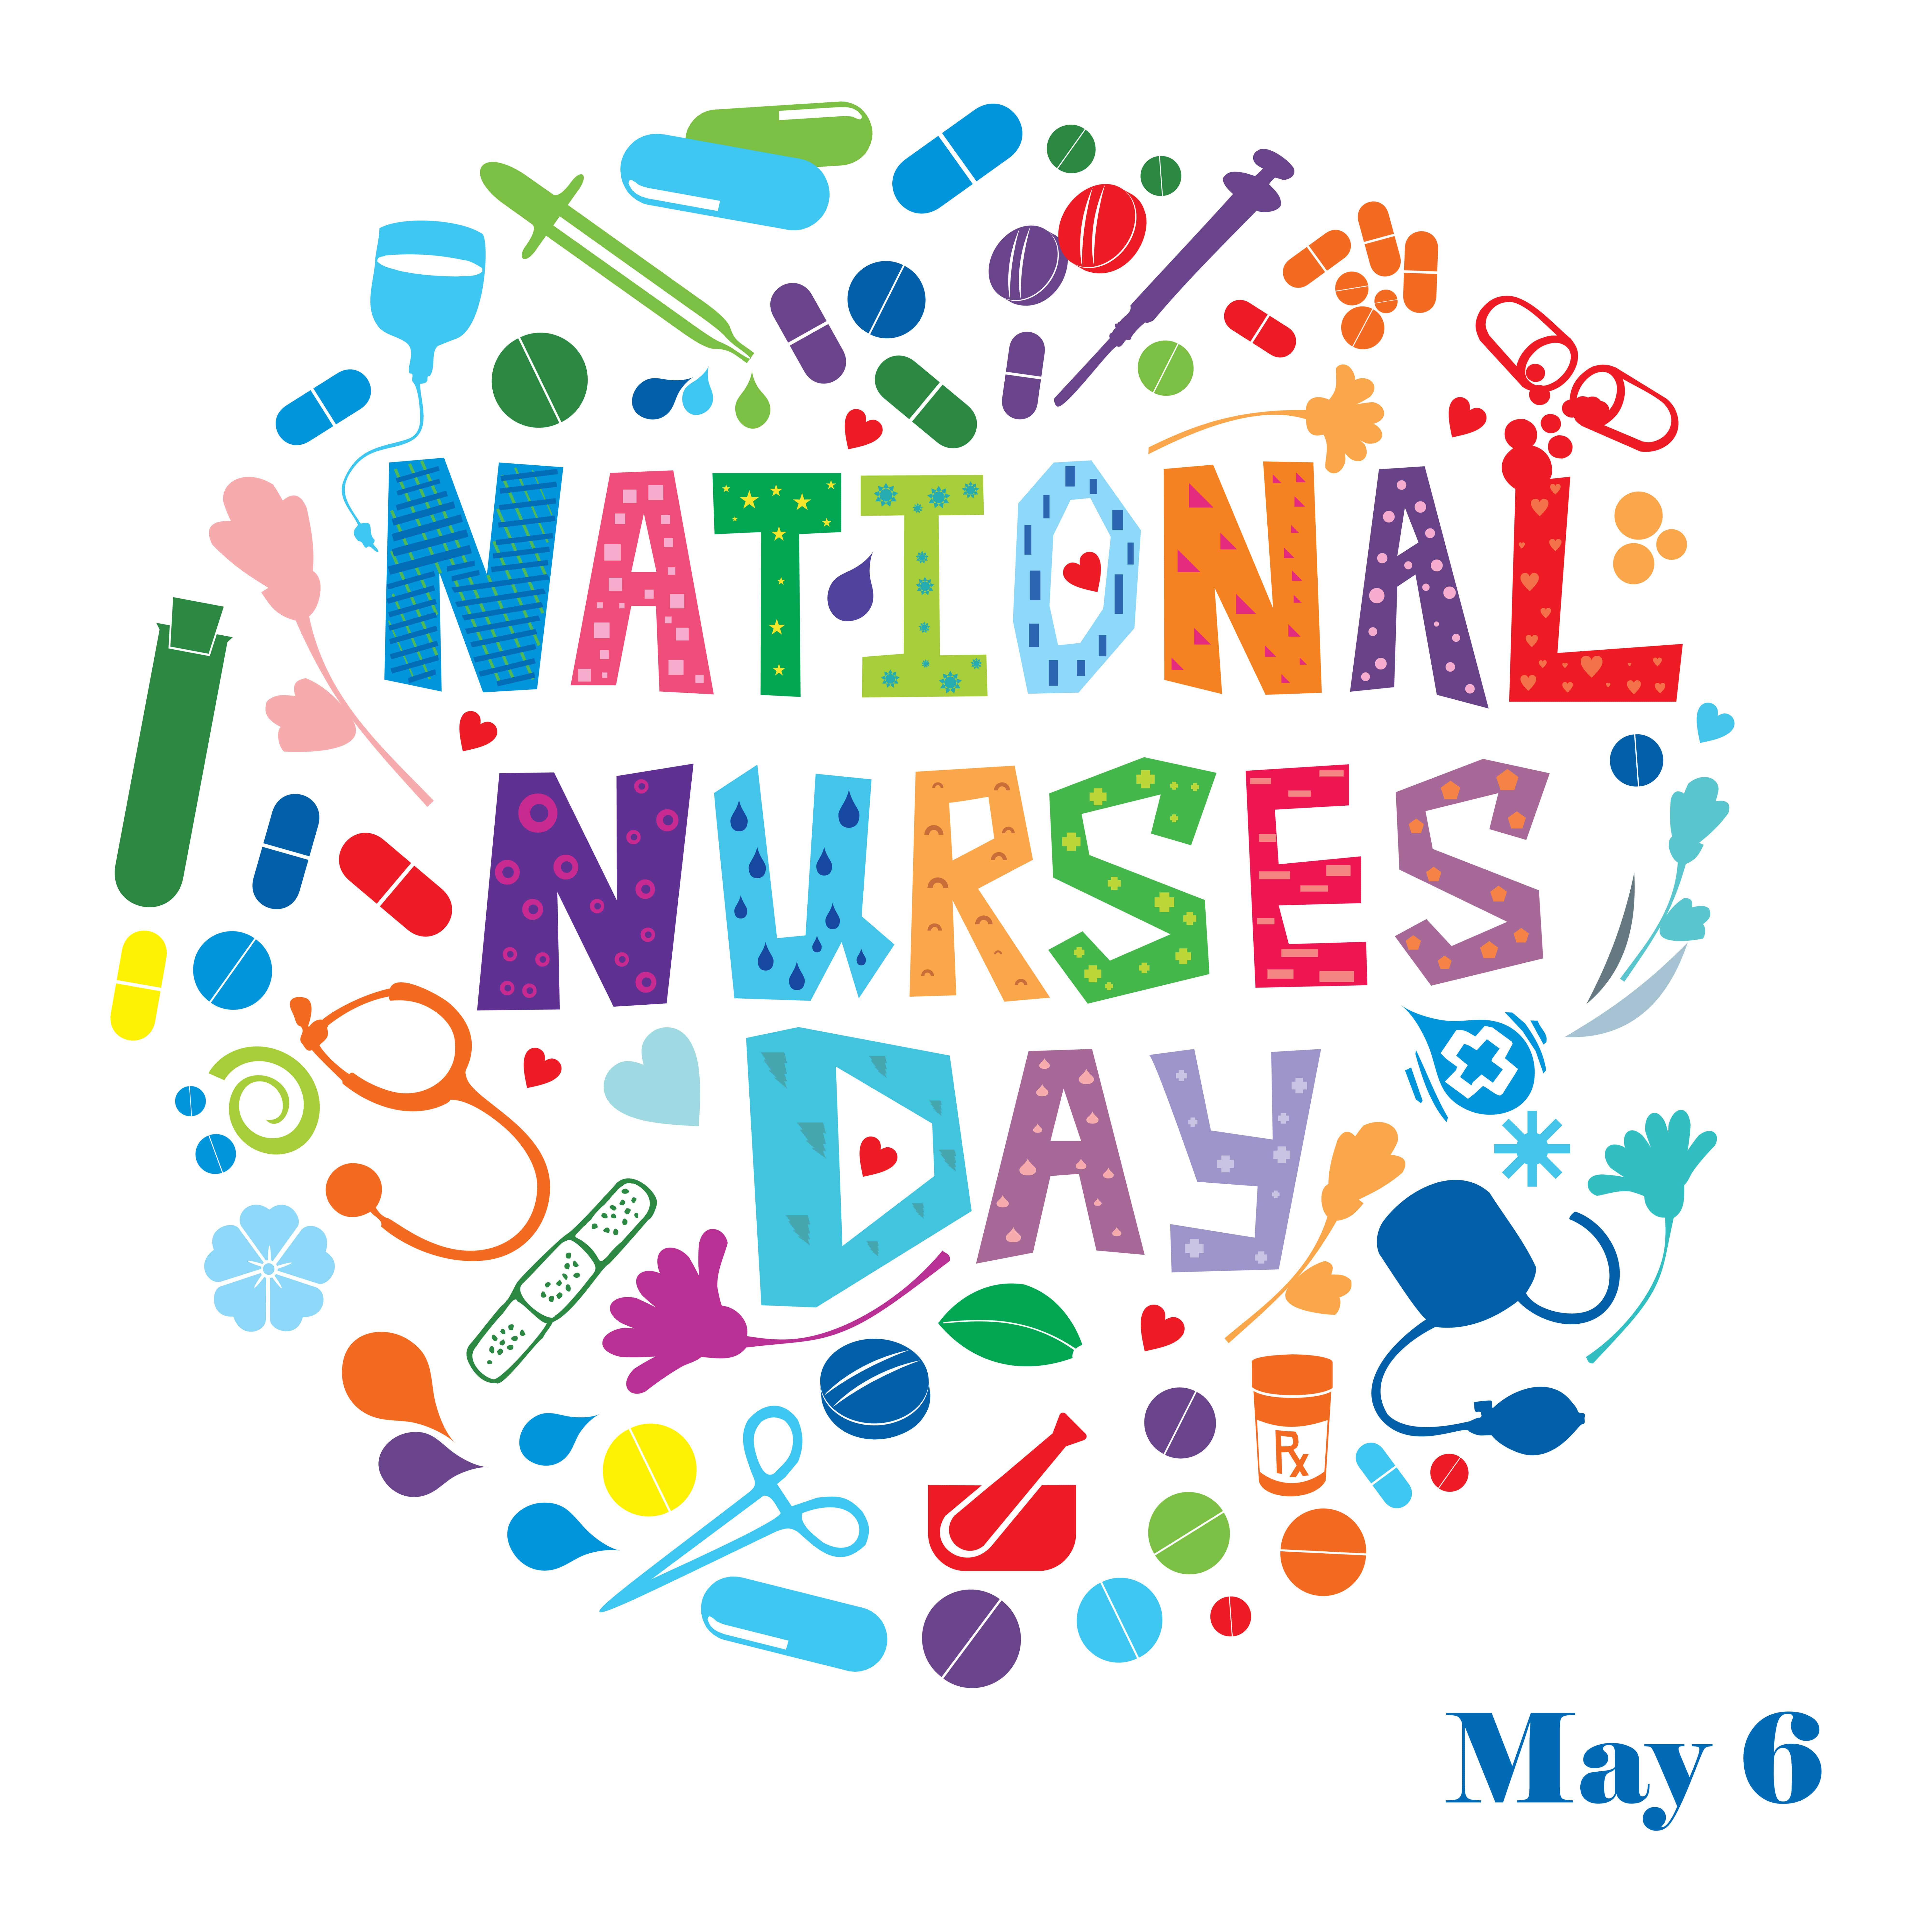 Nurses Day Theme 2020 Nursing the World to Health ICN announces